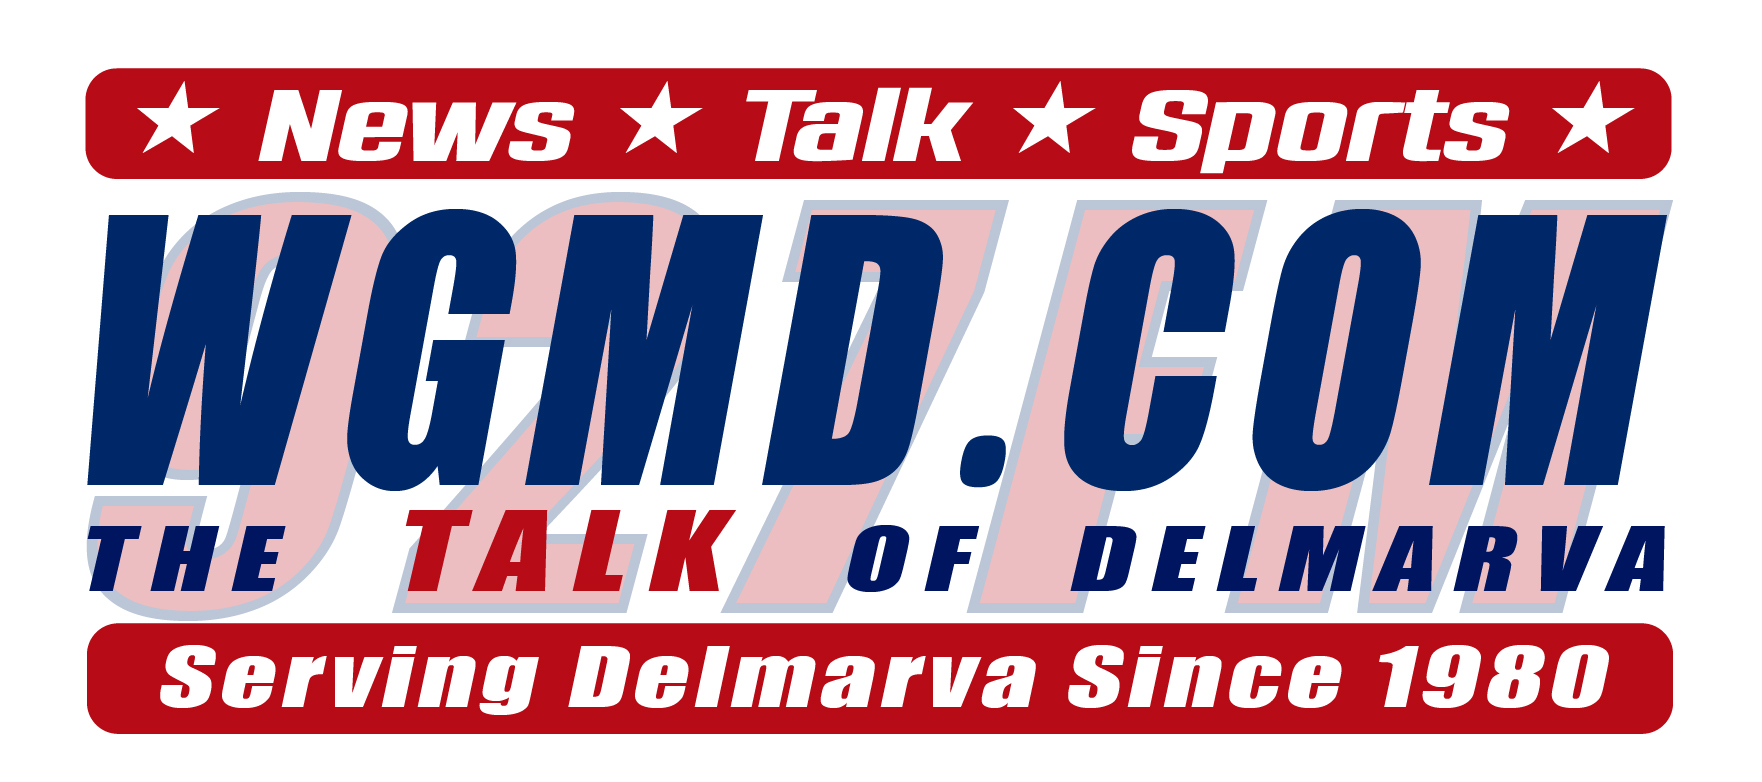 927 FM WGMD.com The Talk of Delmarva 